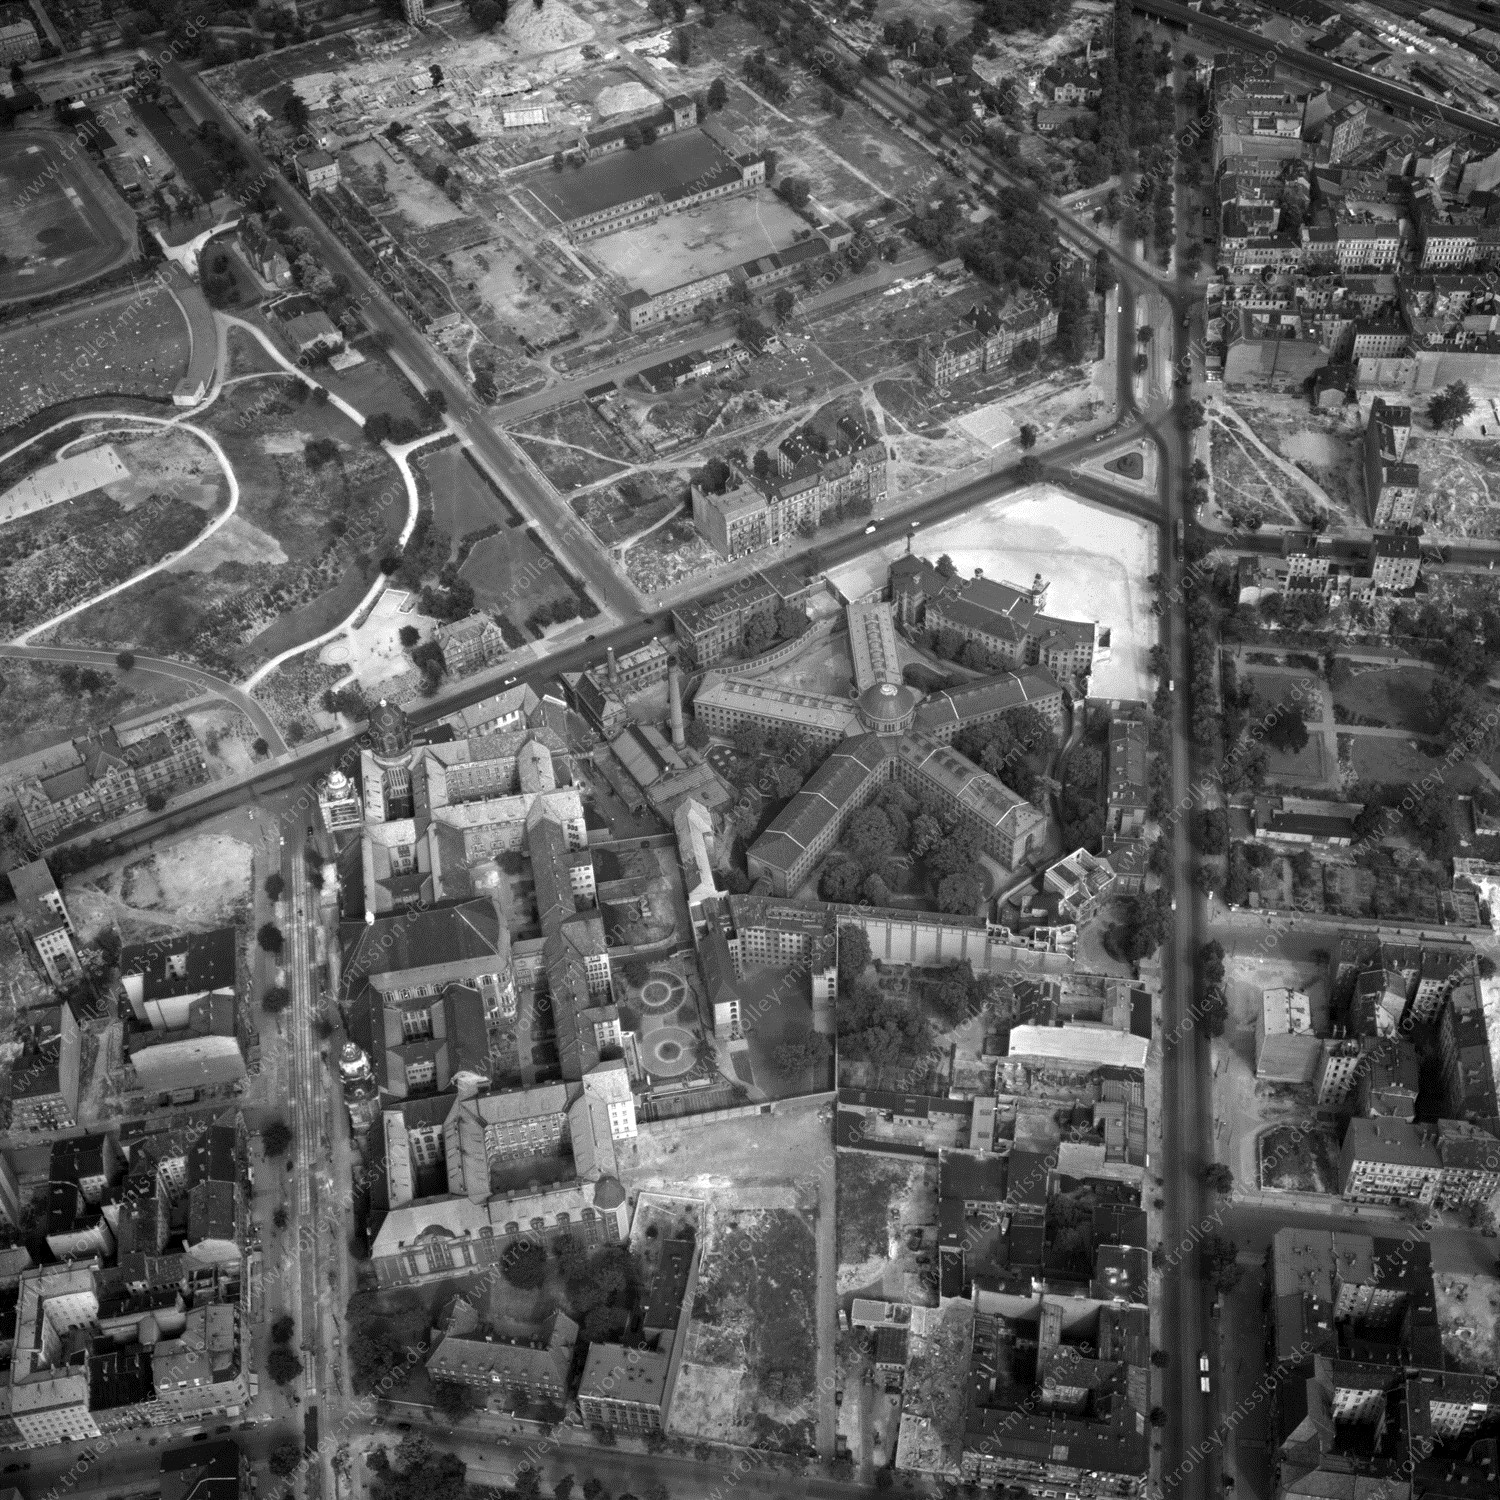 Alte Fotos und Luftbilder von Berlin - Luftbildaufnahme Nr. 10 - Historische Luftaufnahmen von West-Berlin aus dem Jahr 1954 - Flugstrecke Whiskey